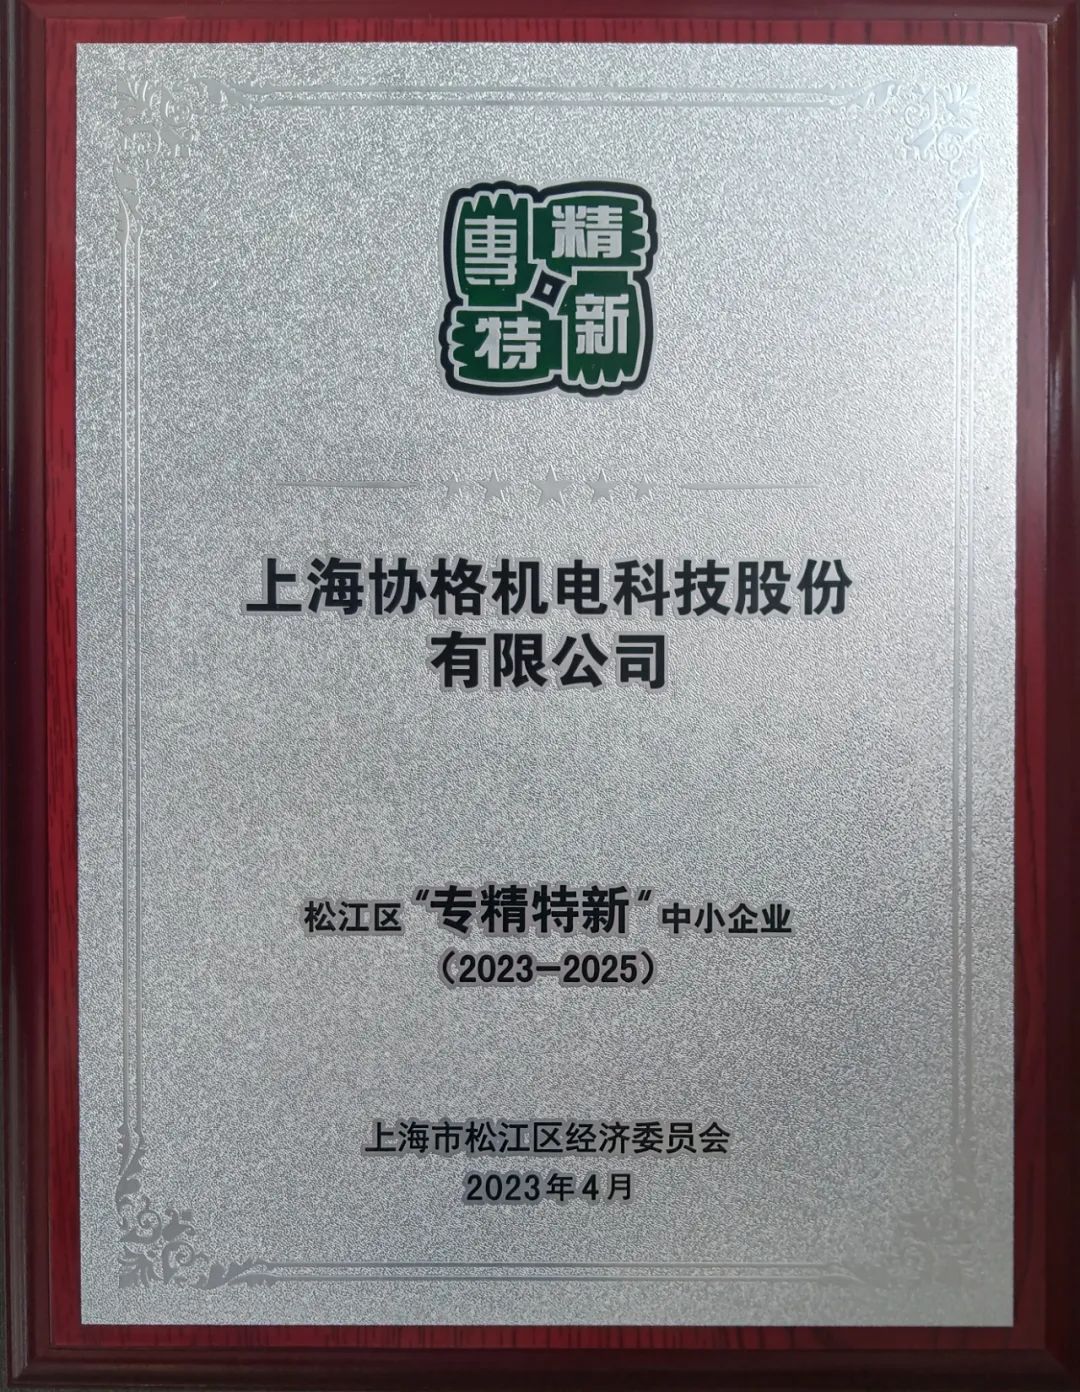 上海协格机电荣获上海市“专精特新”企业称号